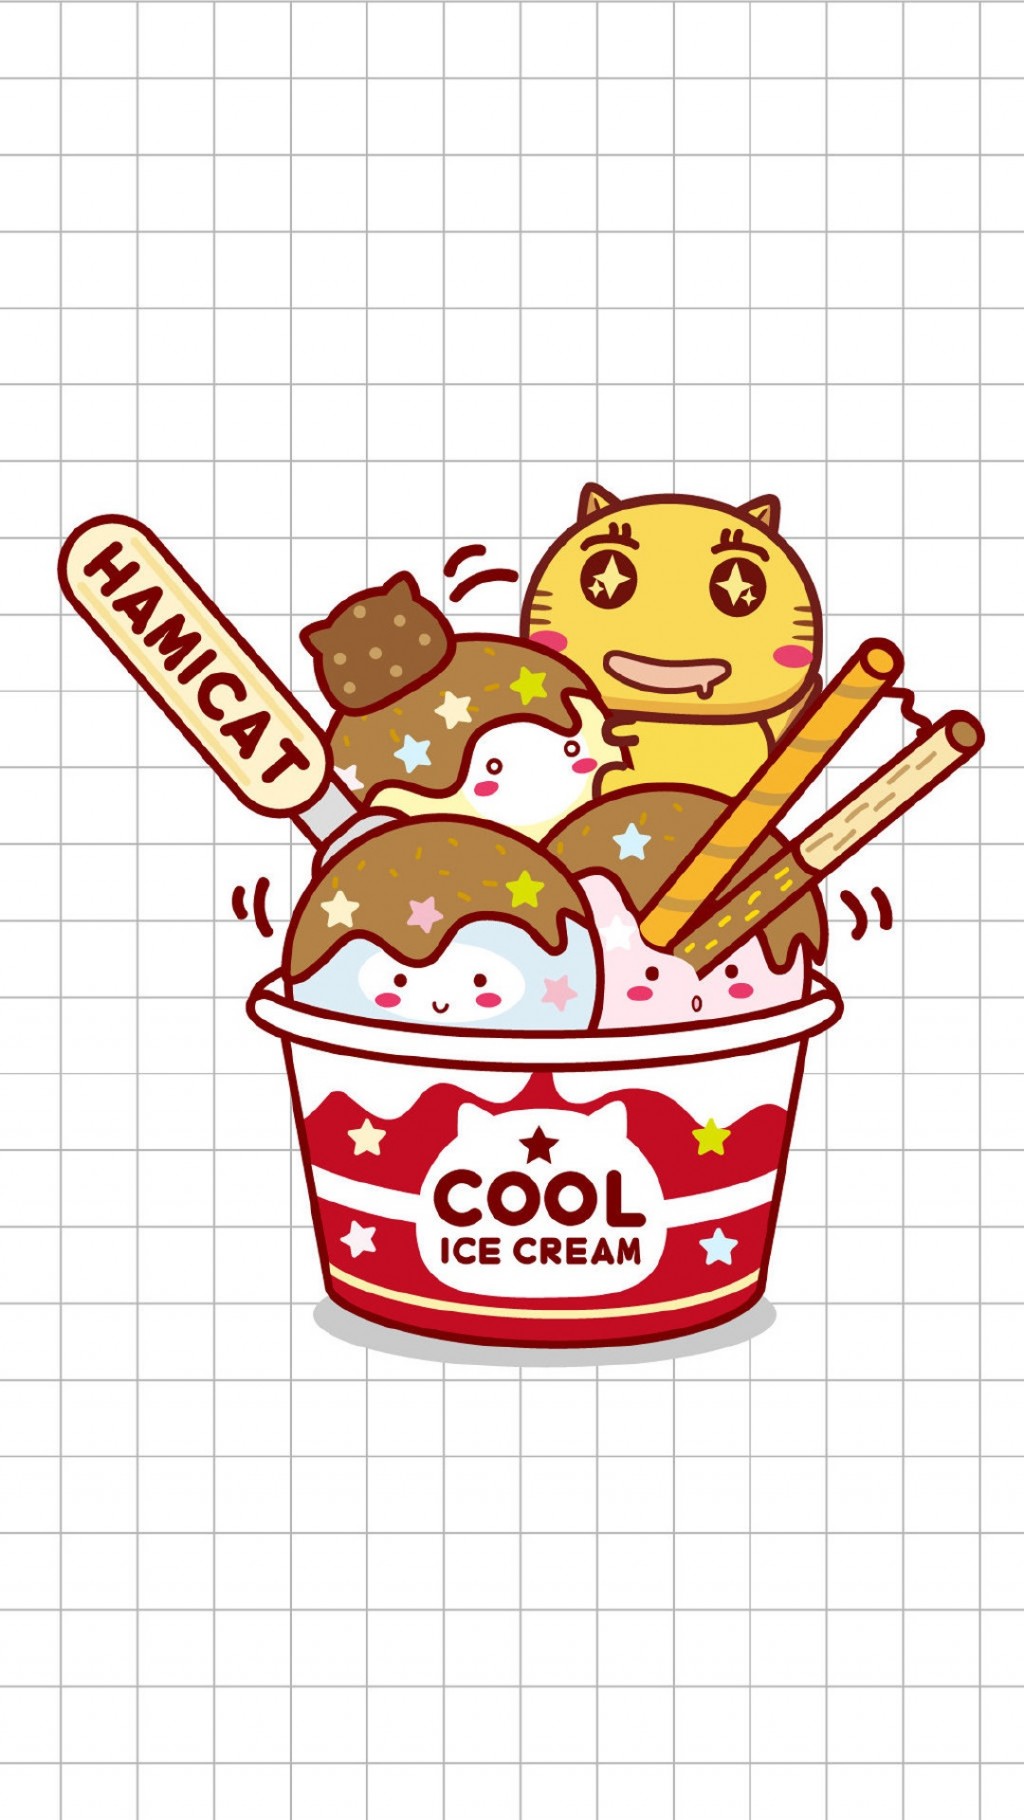 哈咪猫冰淇淋可爱卡通手机壁纸